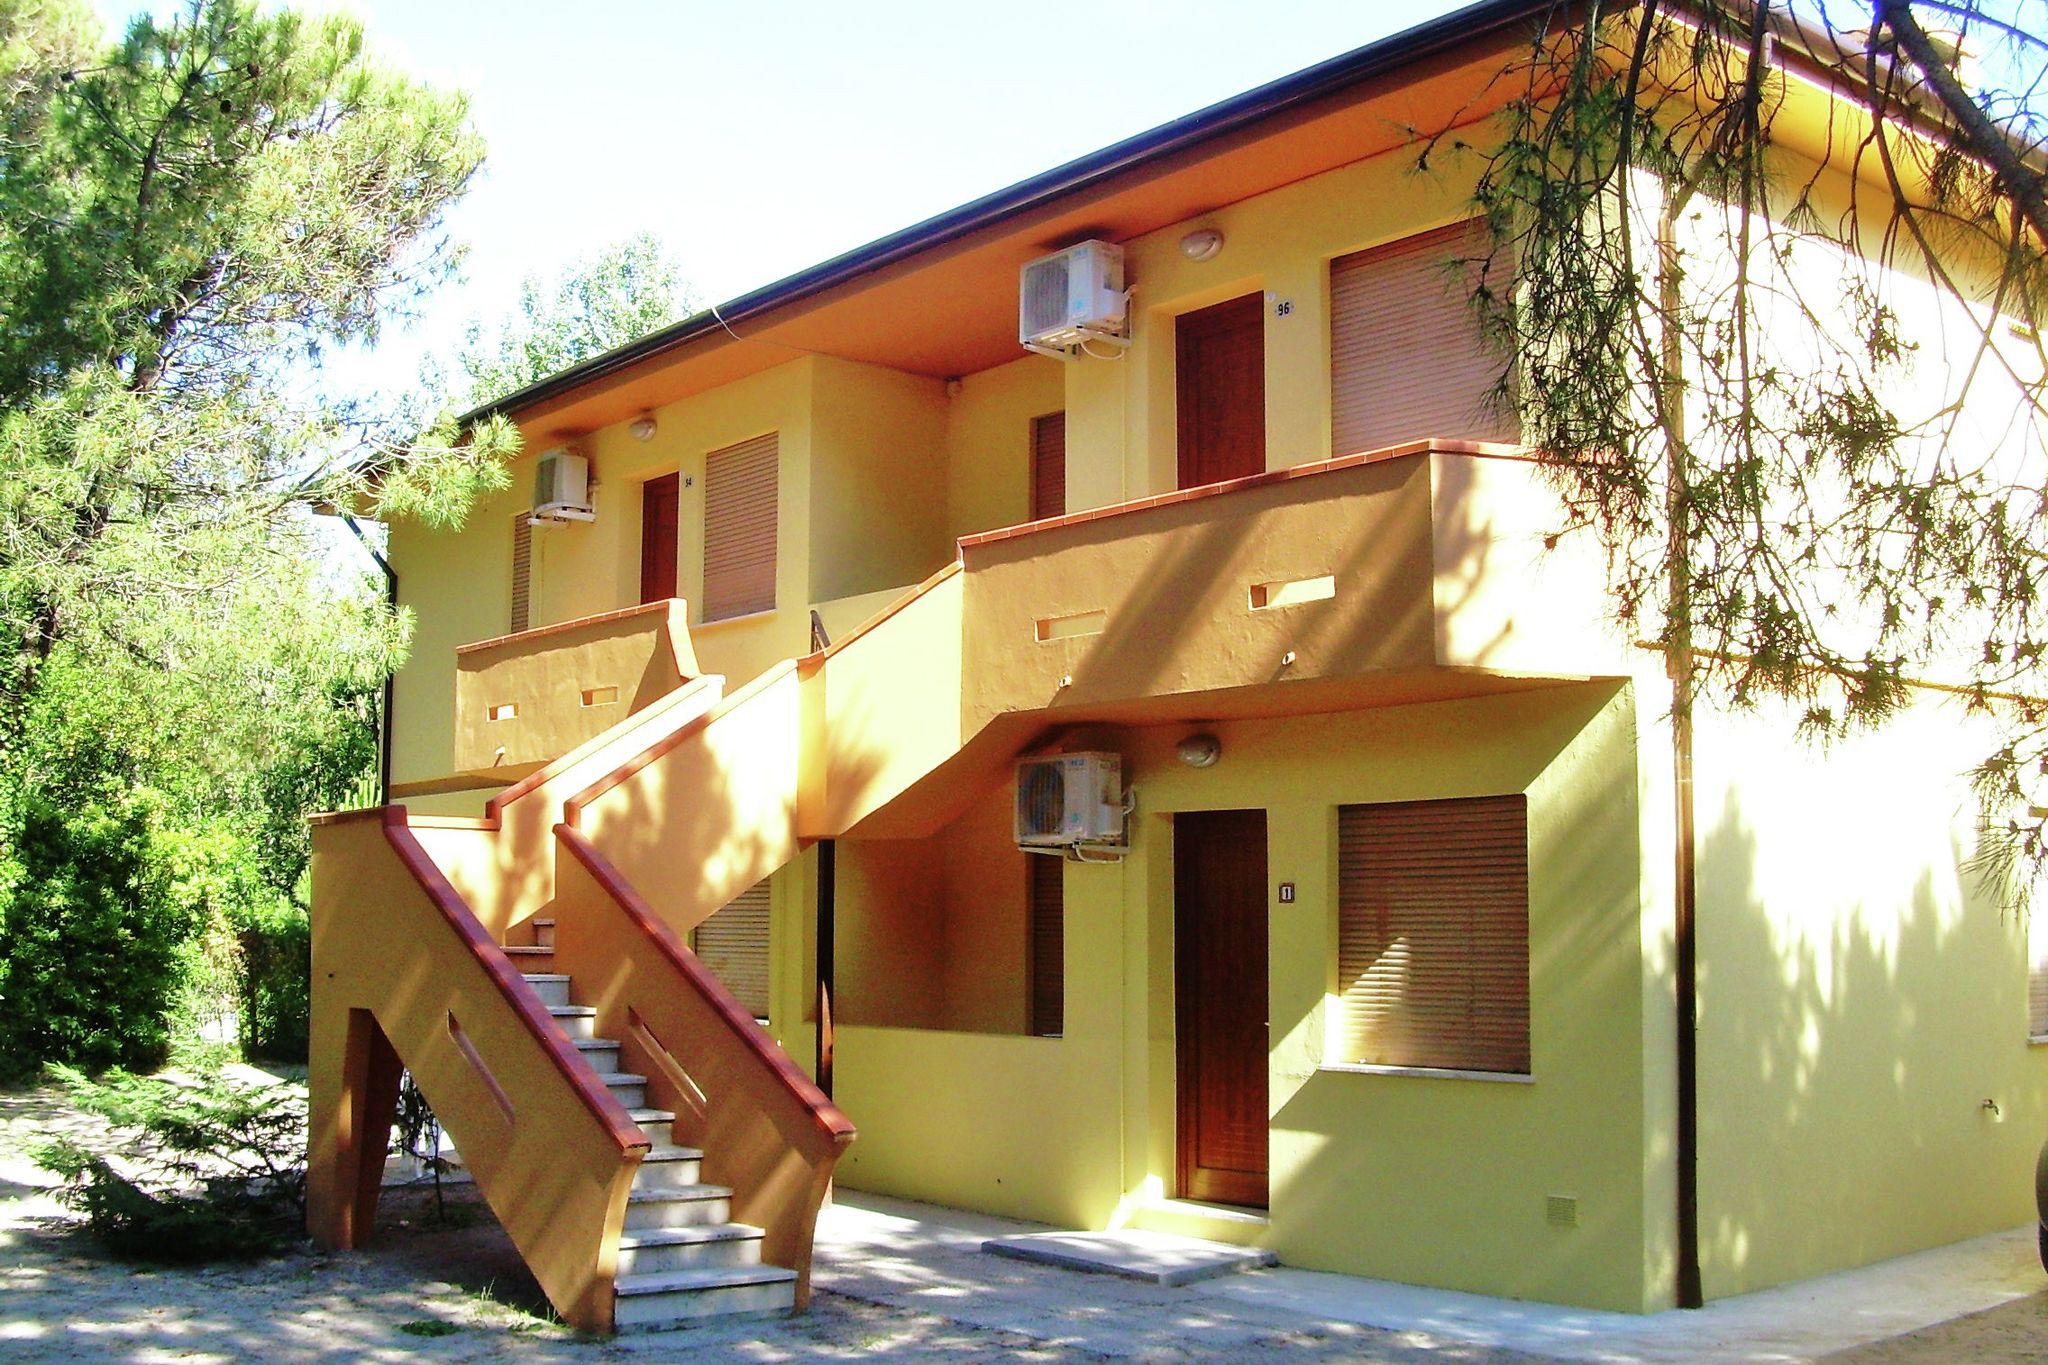 Magnifique appartement avec jardin situé à Rosolina Mare